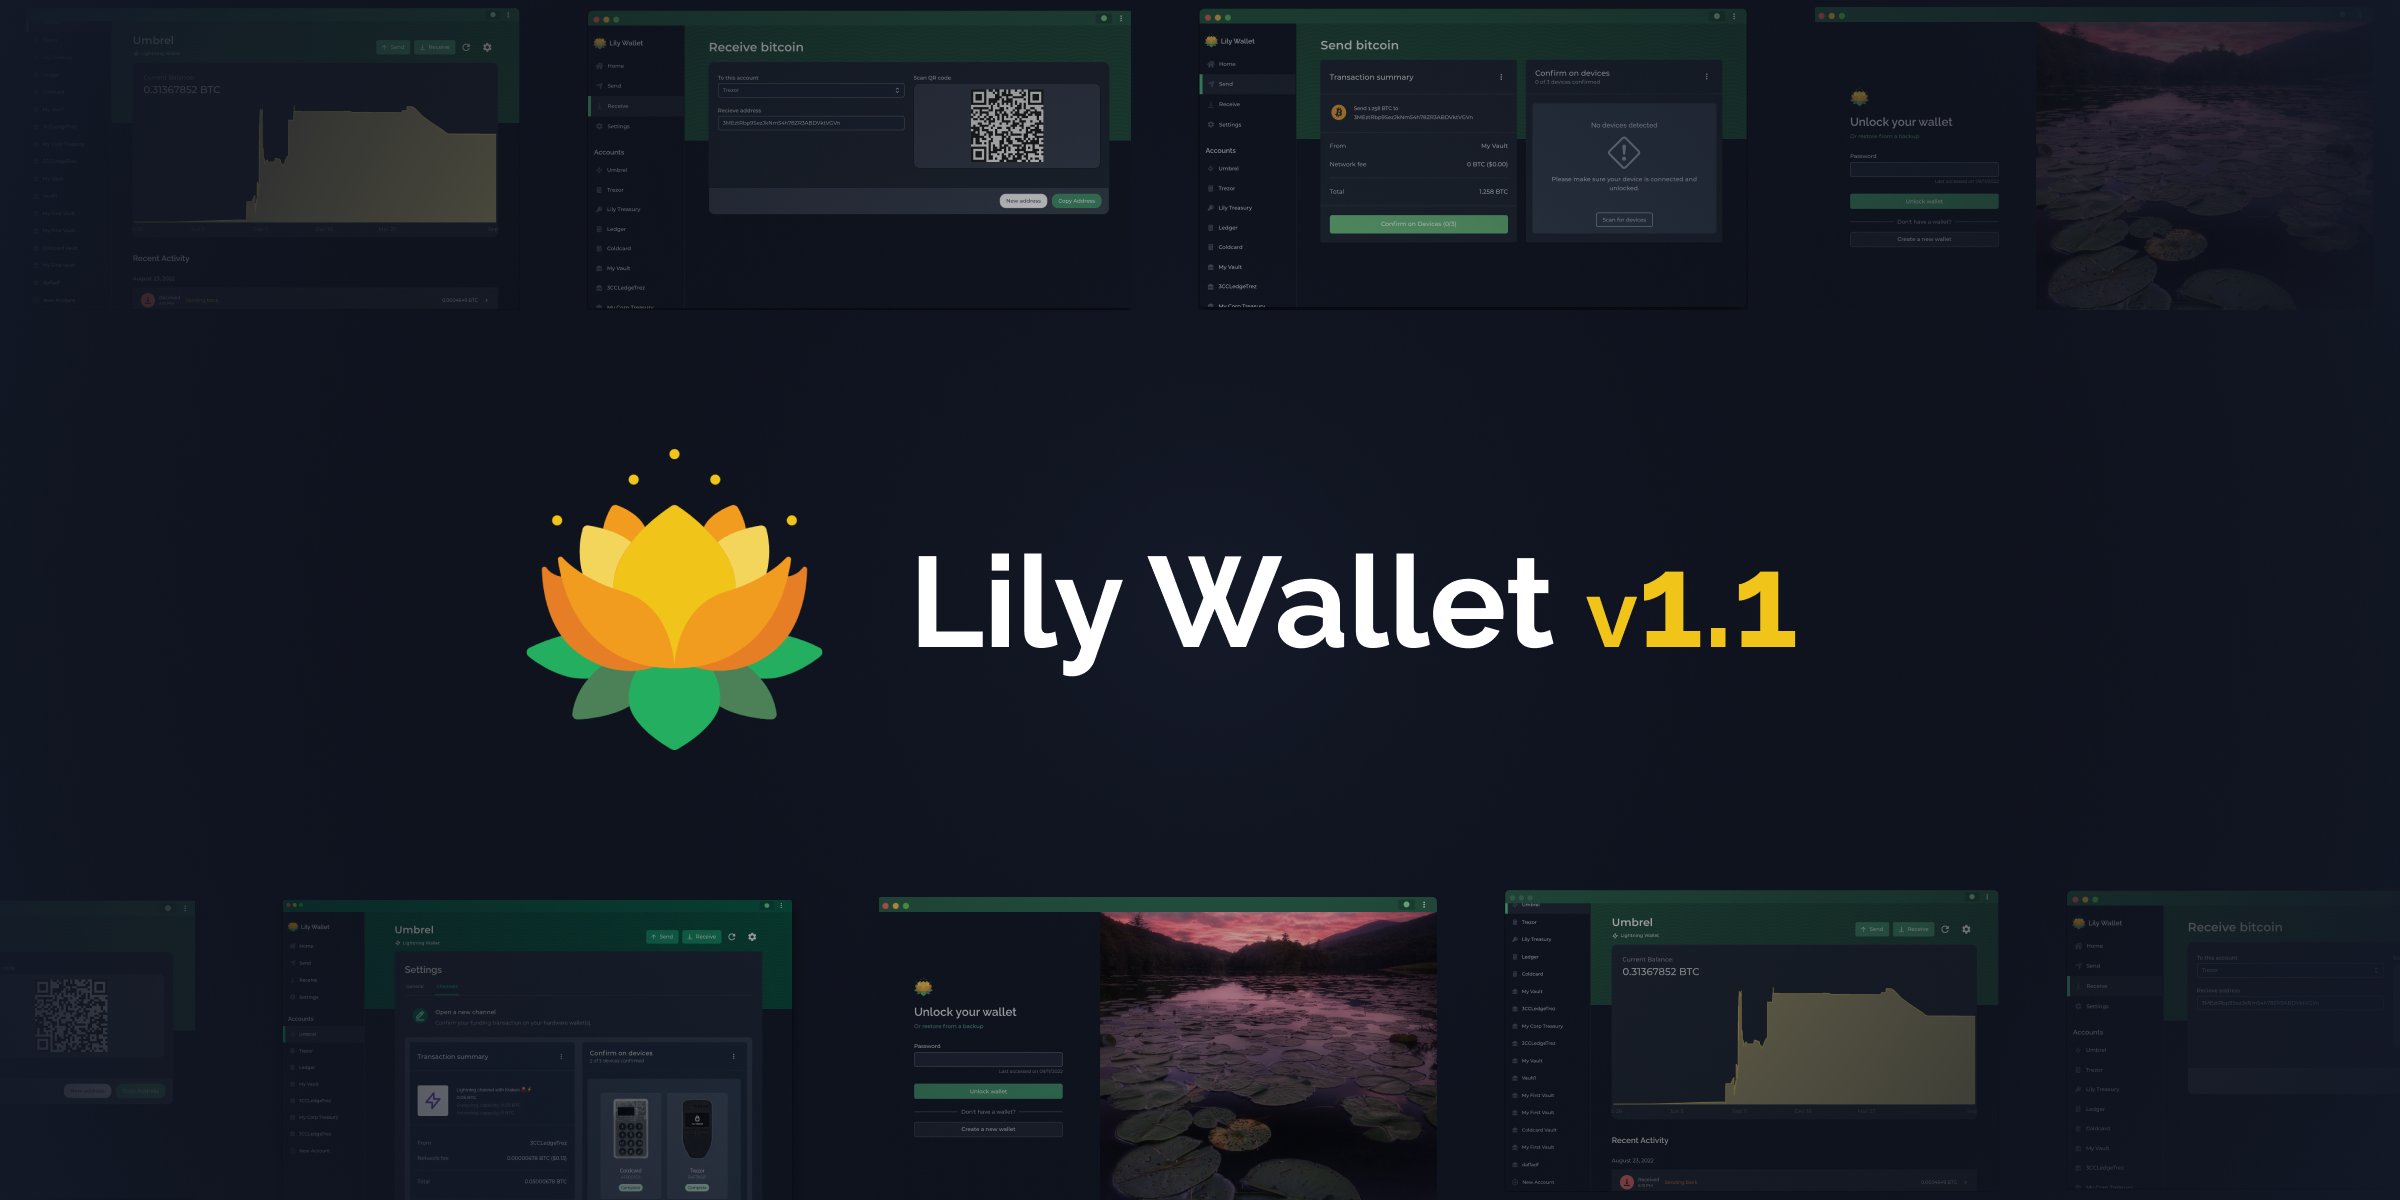 Lily Wallet v1.2 Header